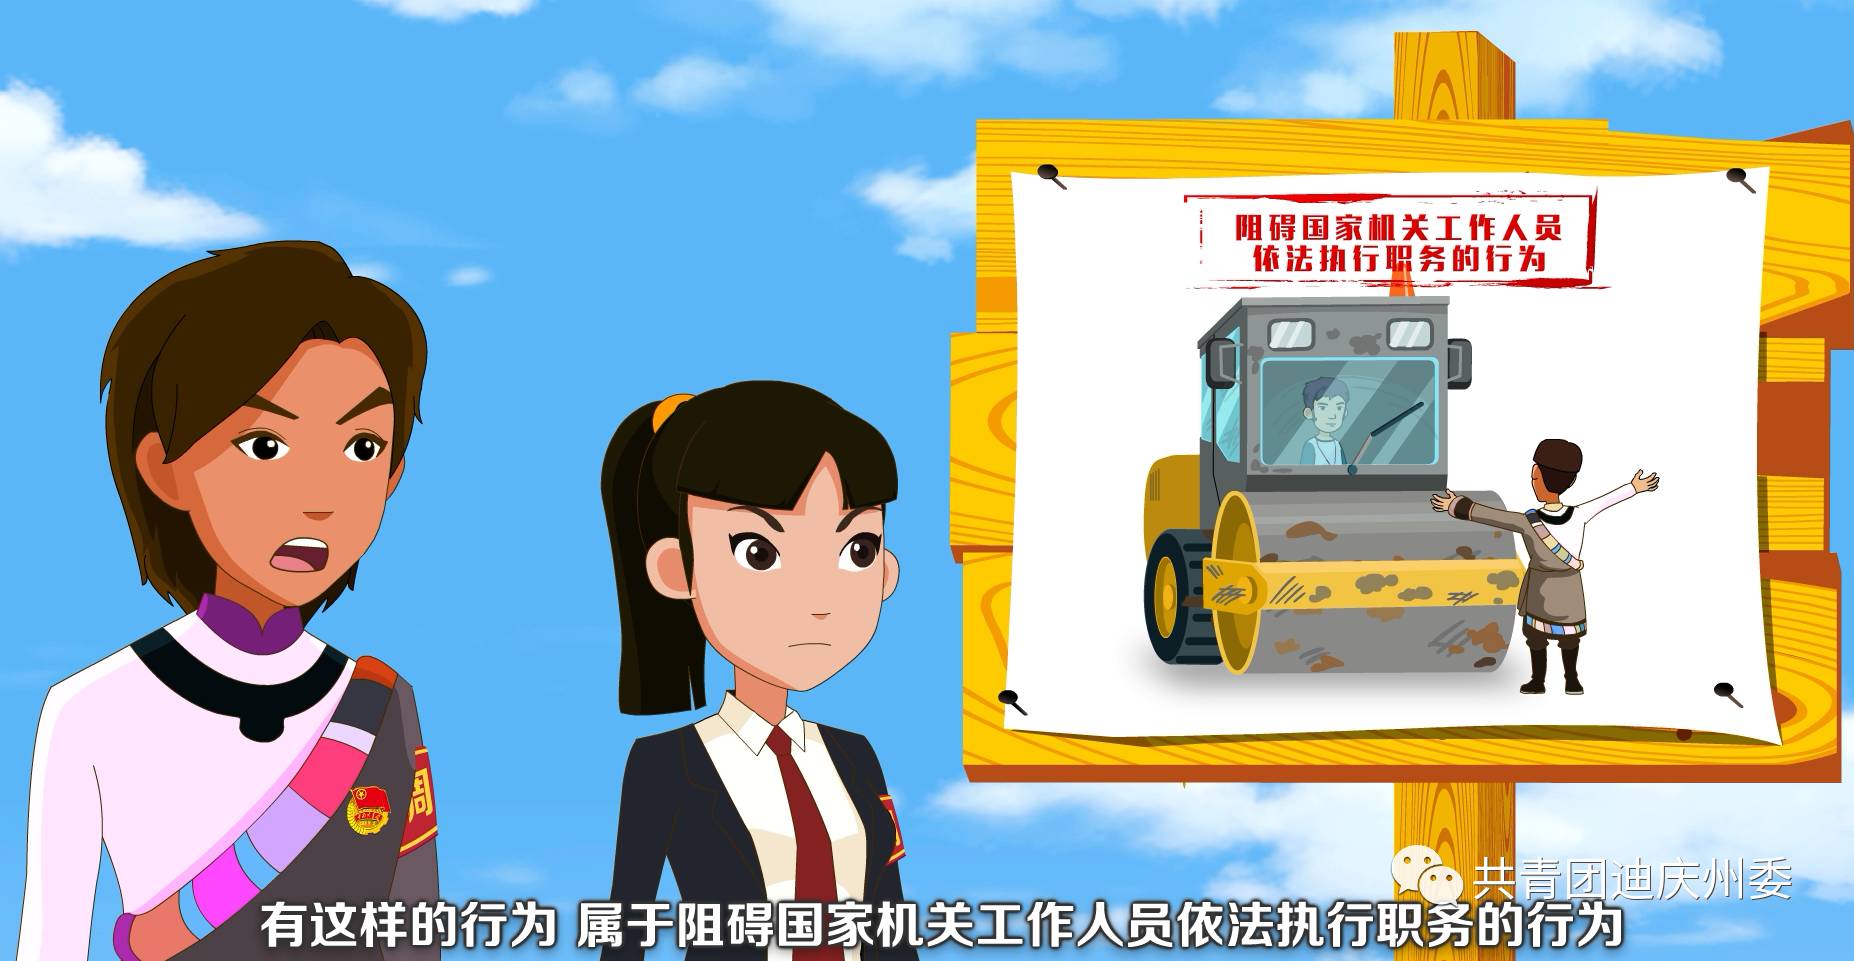 普法动漫|迪庆州青少年"法律知识七进"教育宣传片